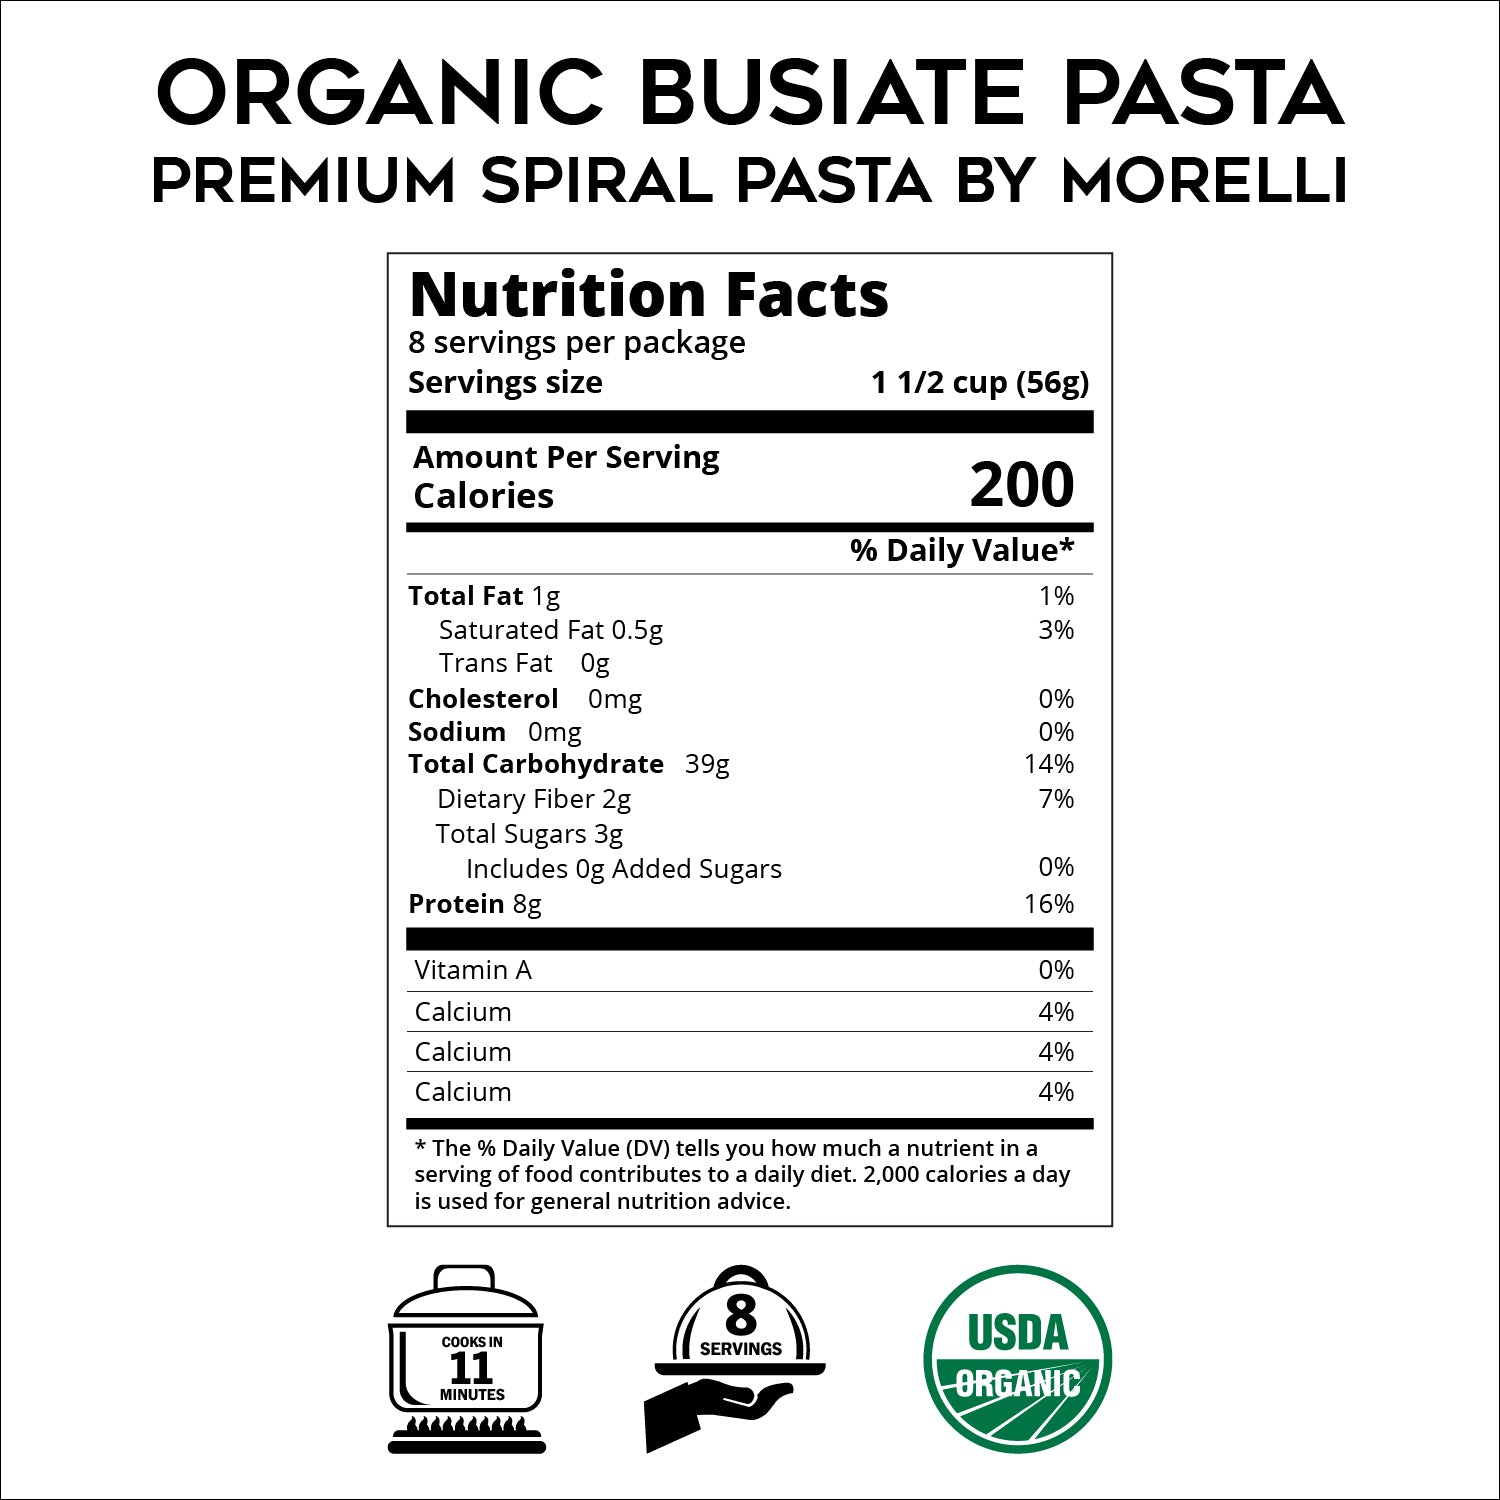 Organic Busiate Pasta - Premium Spiral Pasta by Morelli